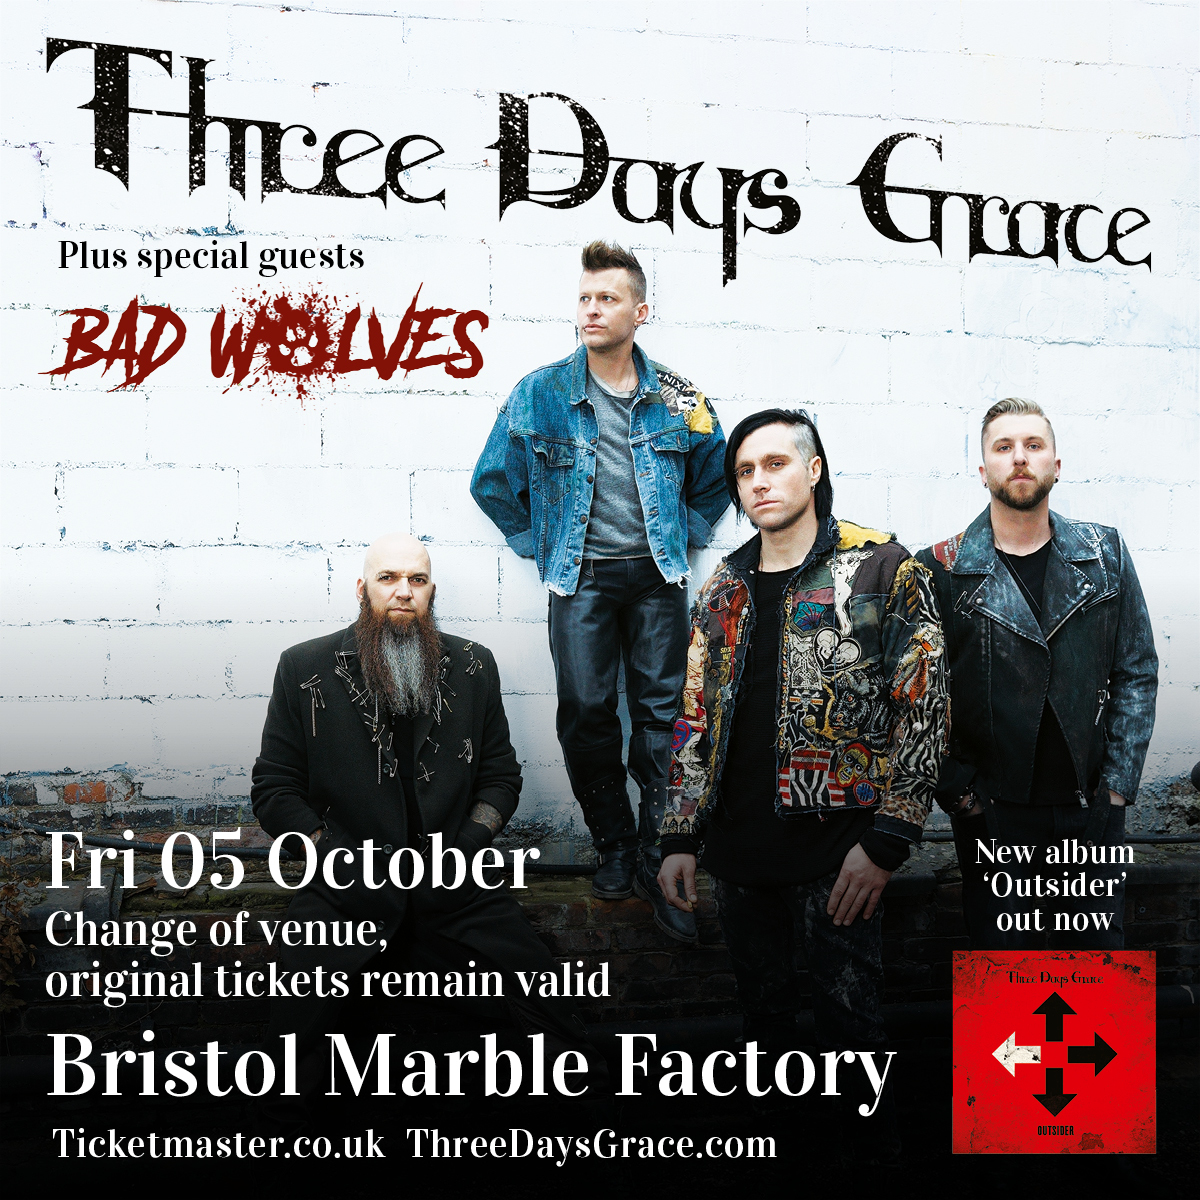 Venue Change for Bristol on October 5